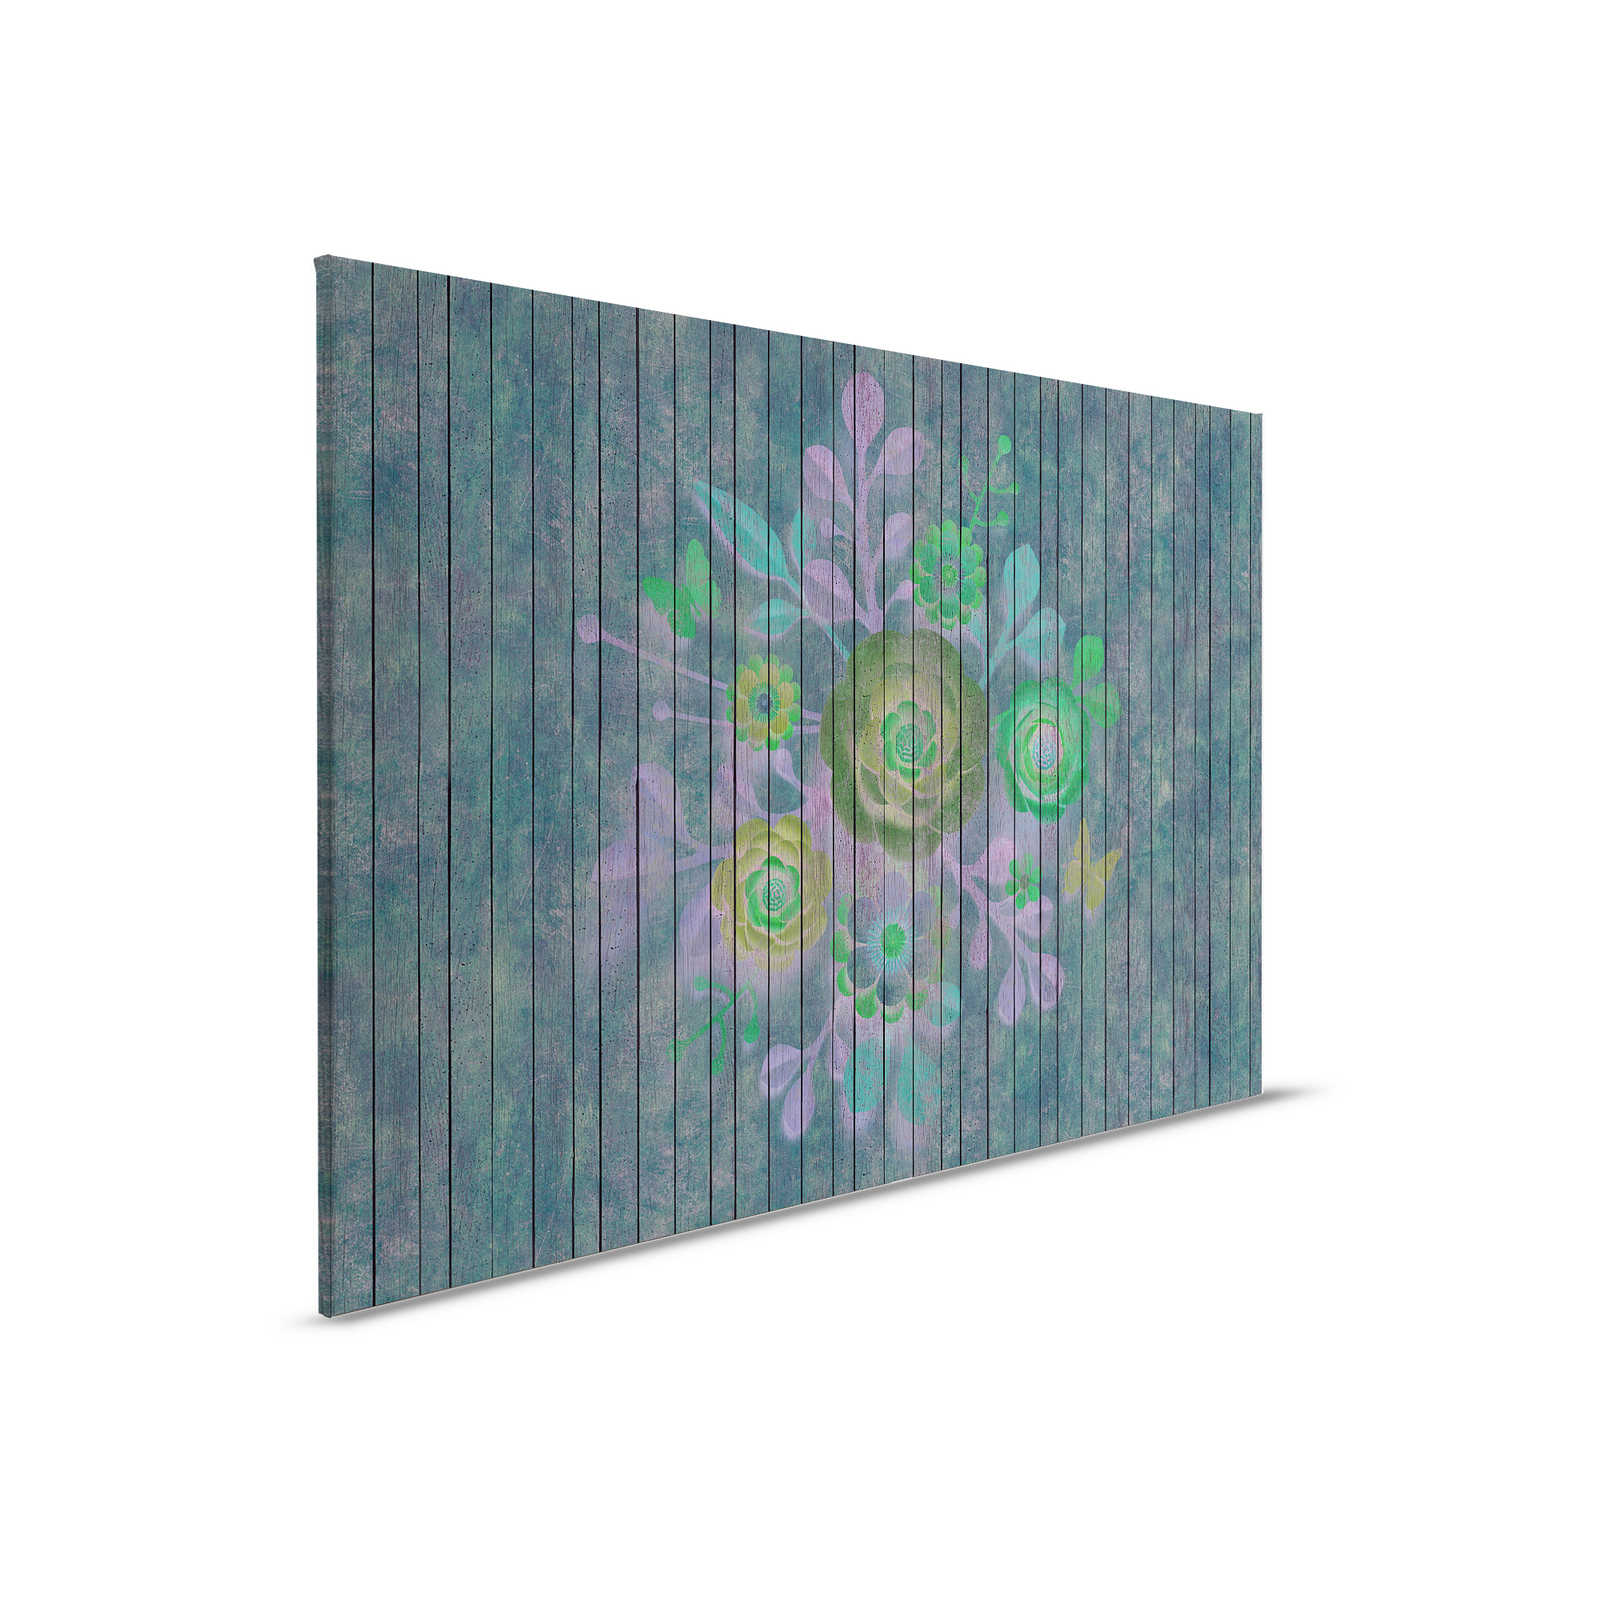 Spray bouquet 2 - Quadro su tela con struttura in legno e fiori su tavola - 0,90 m x 0,60 m
